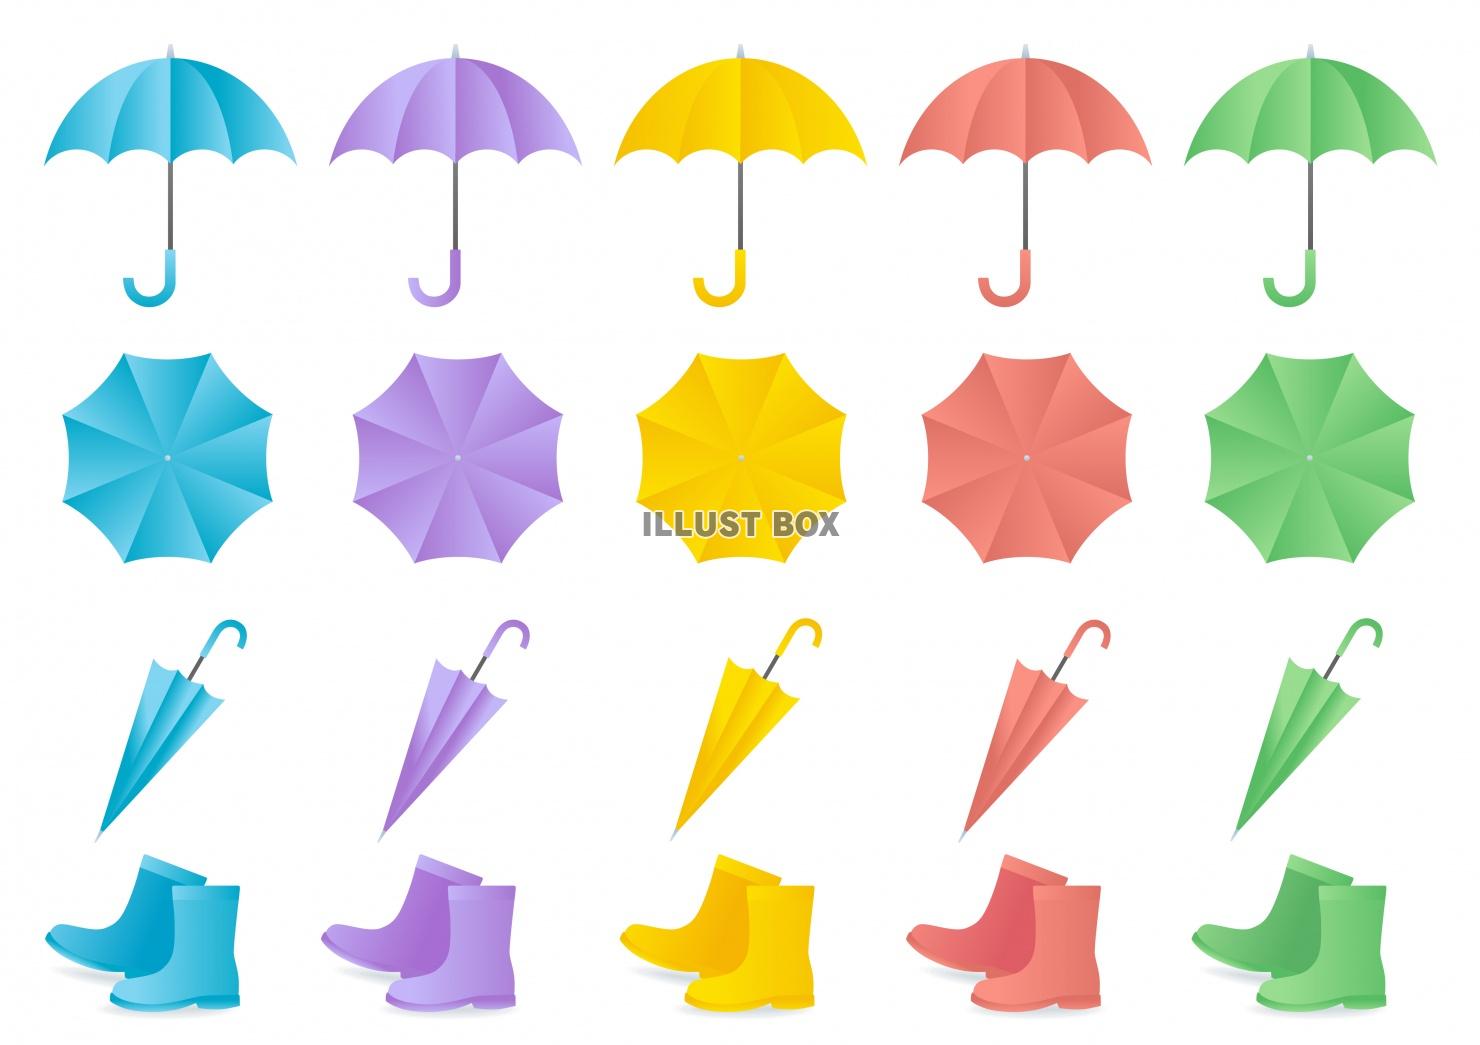 カラフル傘と長靴のイラストセット